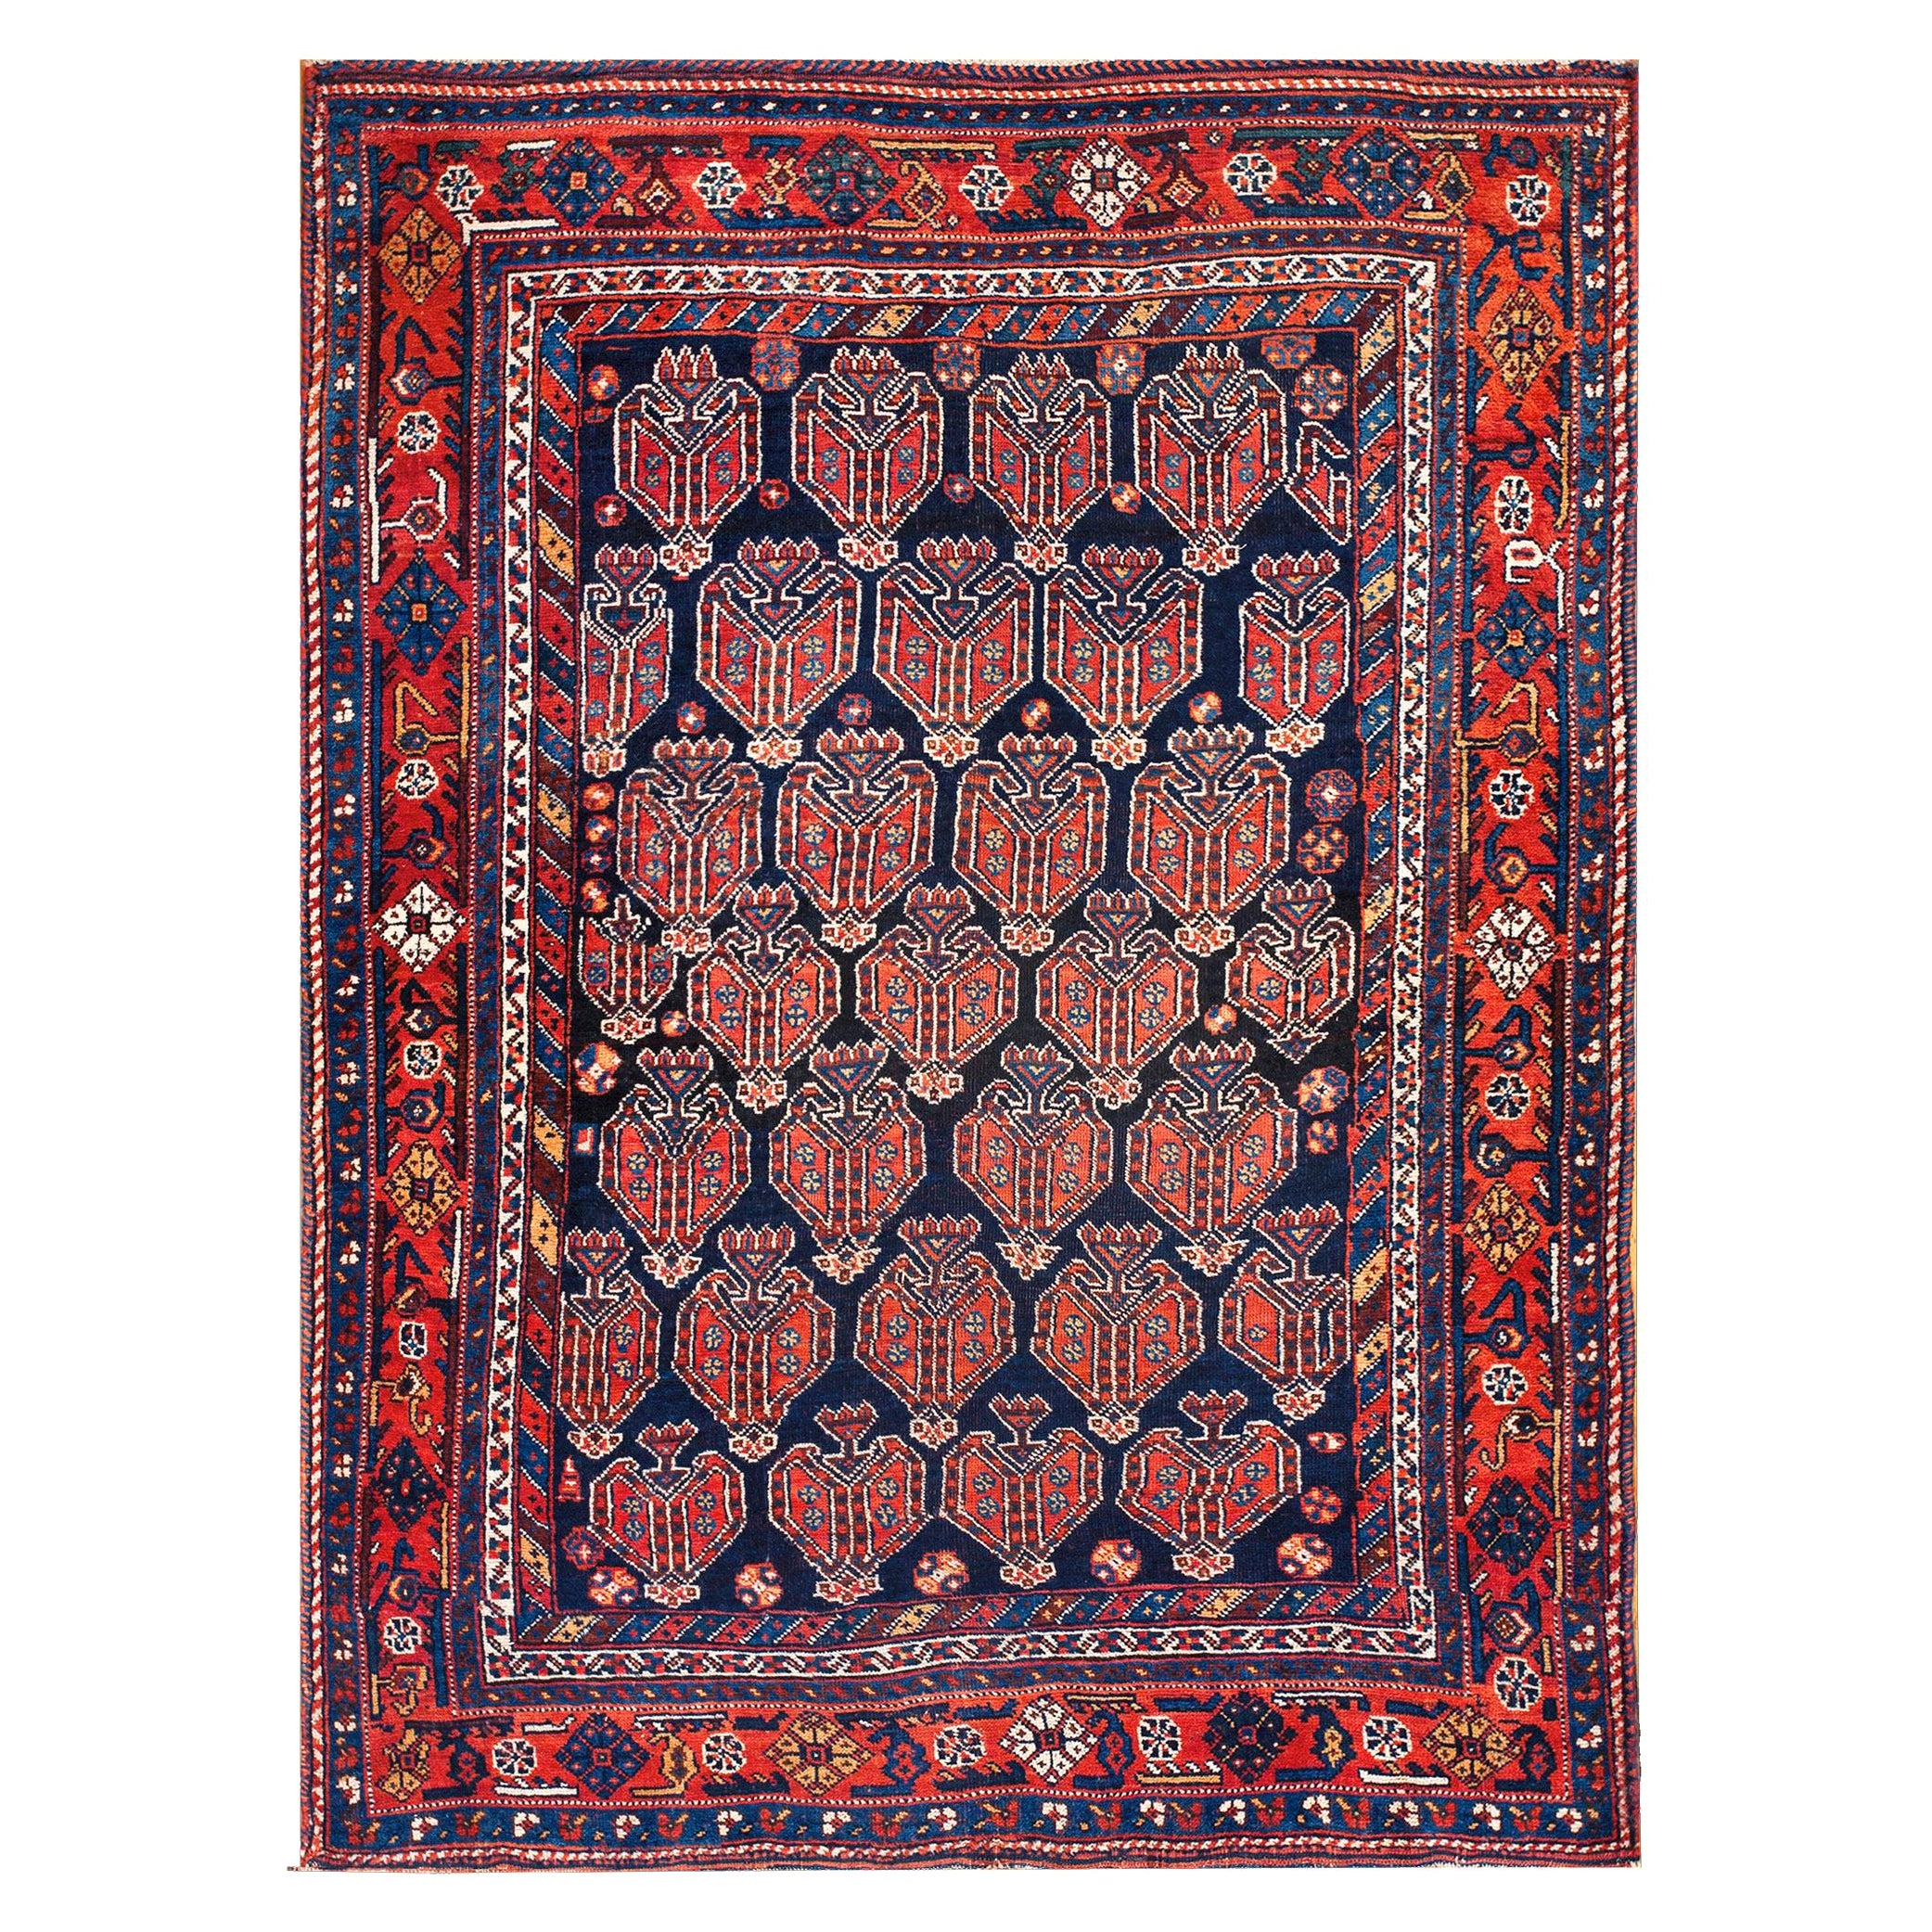 Persischer Afshar-Teppich des frühen 20. Jahrhunderts ( 4' 5"" x 5' 10" - 135 x 178 cm)